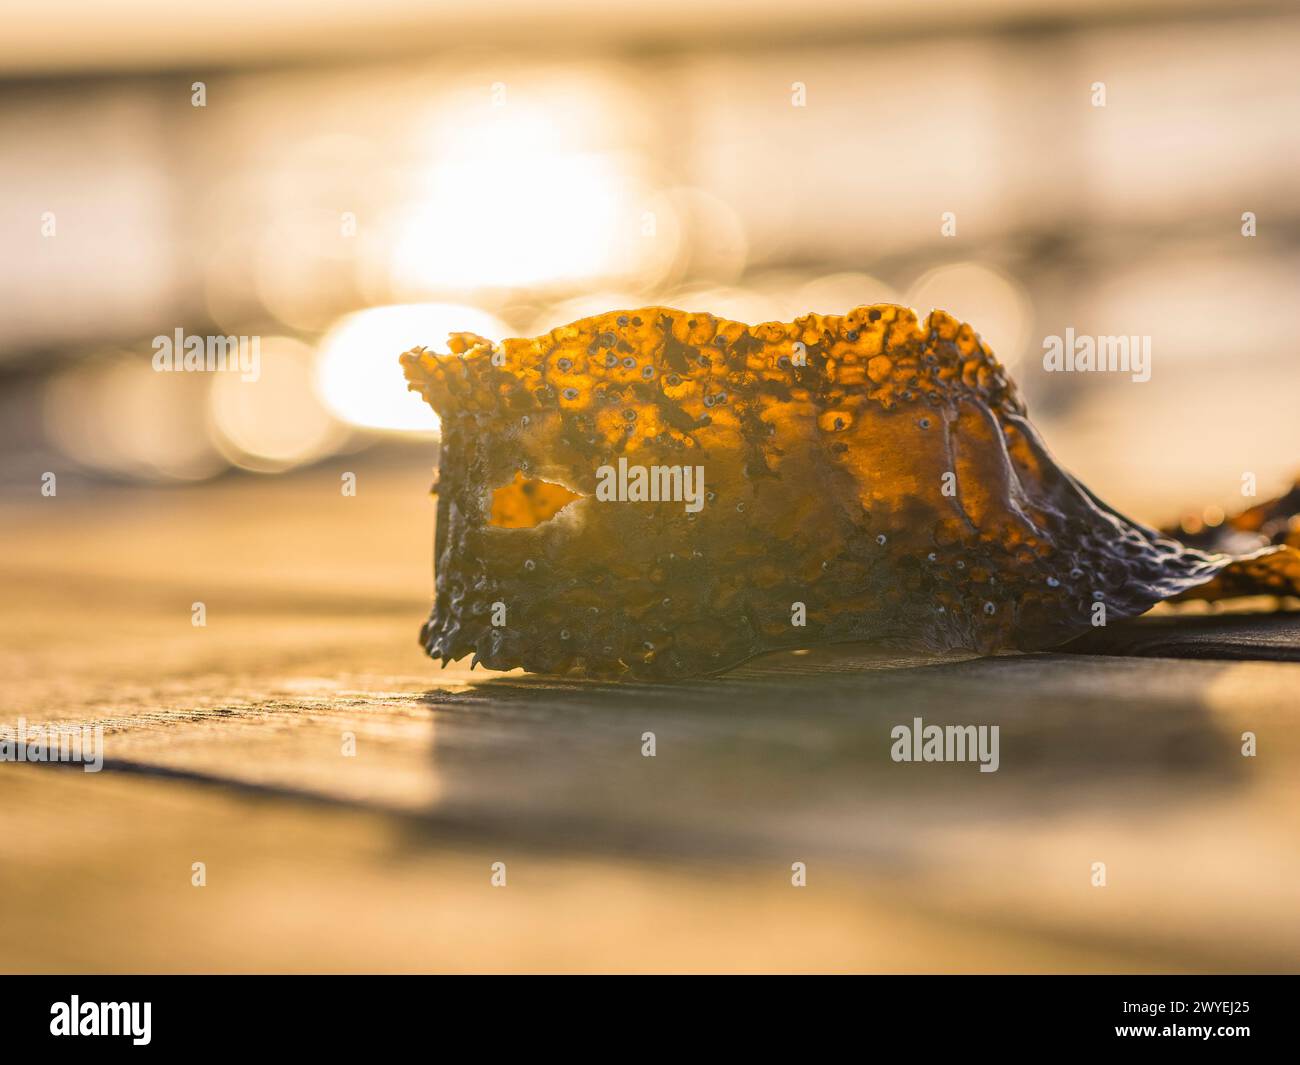 Wenn die Sonne untergeht, leuchtet ihr goldenes Licht durch ein Stück Algen, das auf einem hölzernen Dock in Schweden liegt. Die warmen Farbtöne sorgen für eine ruhige Atmosphäre Stockfoto